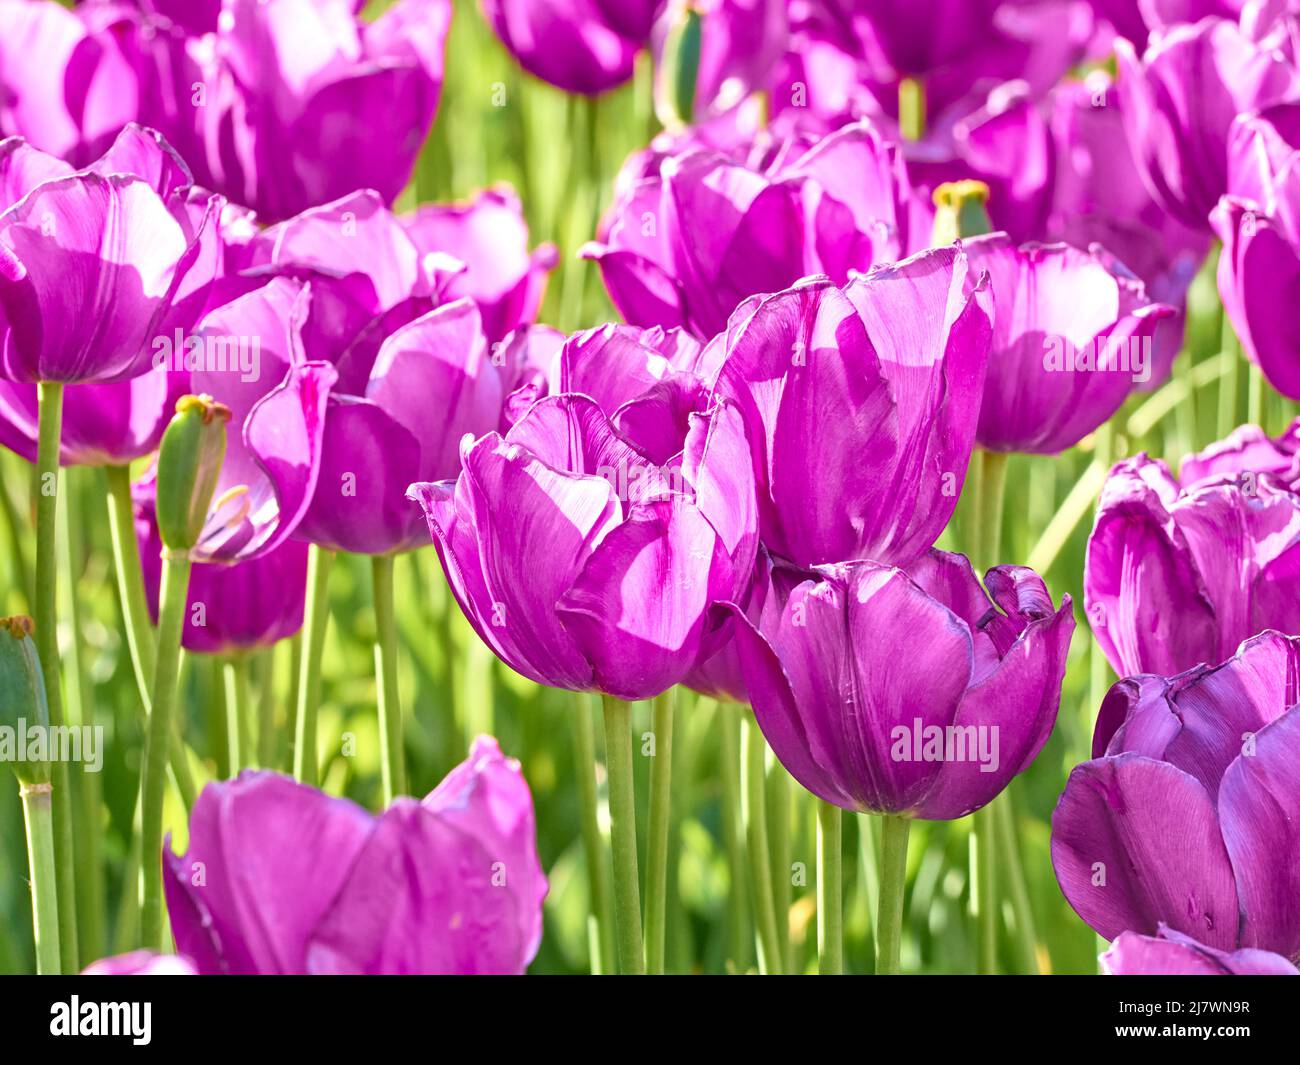 Tulipanes de color púrpura oscuro bajo la luz del sol en el jardín. Foto de stock